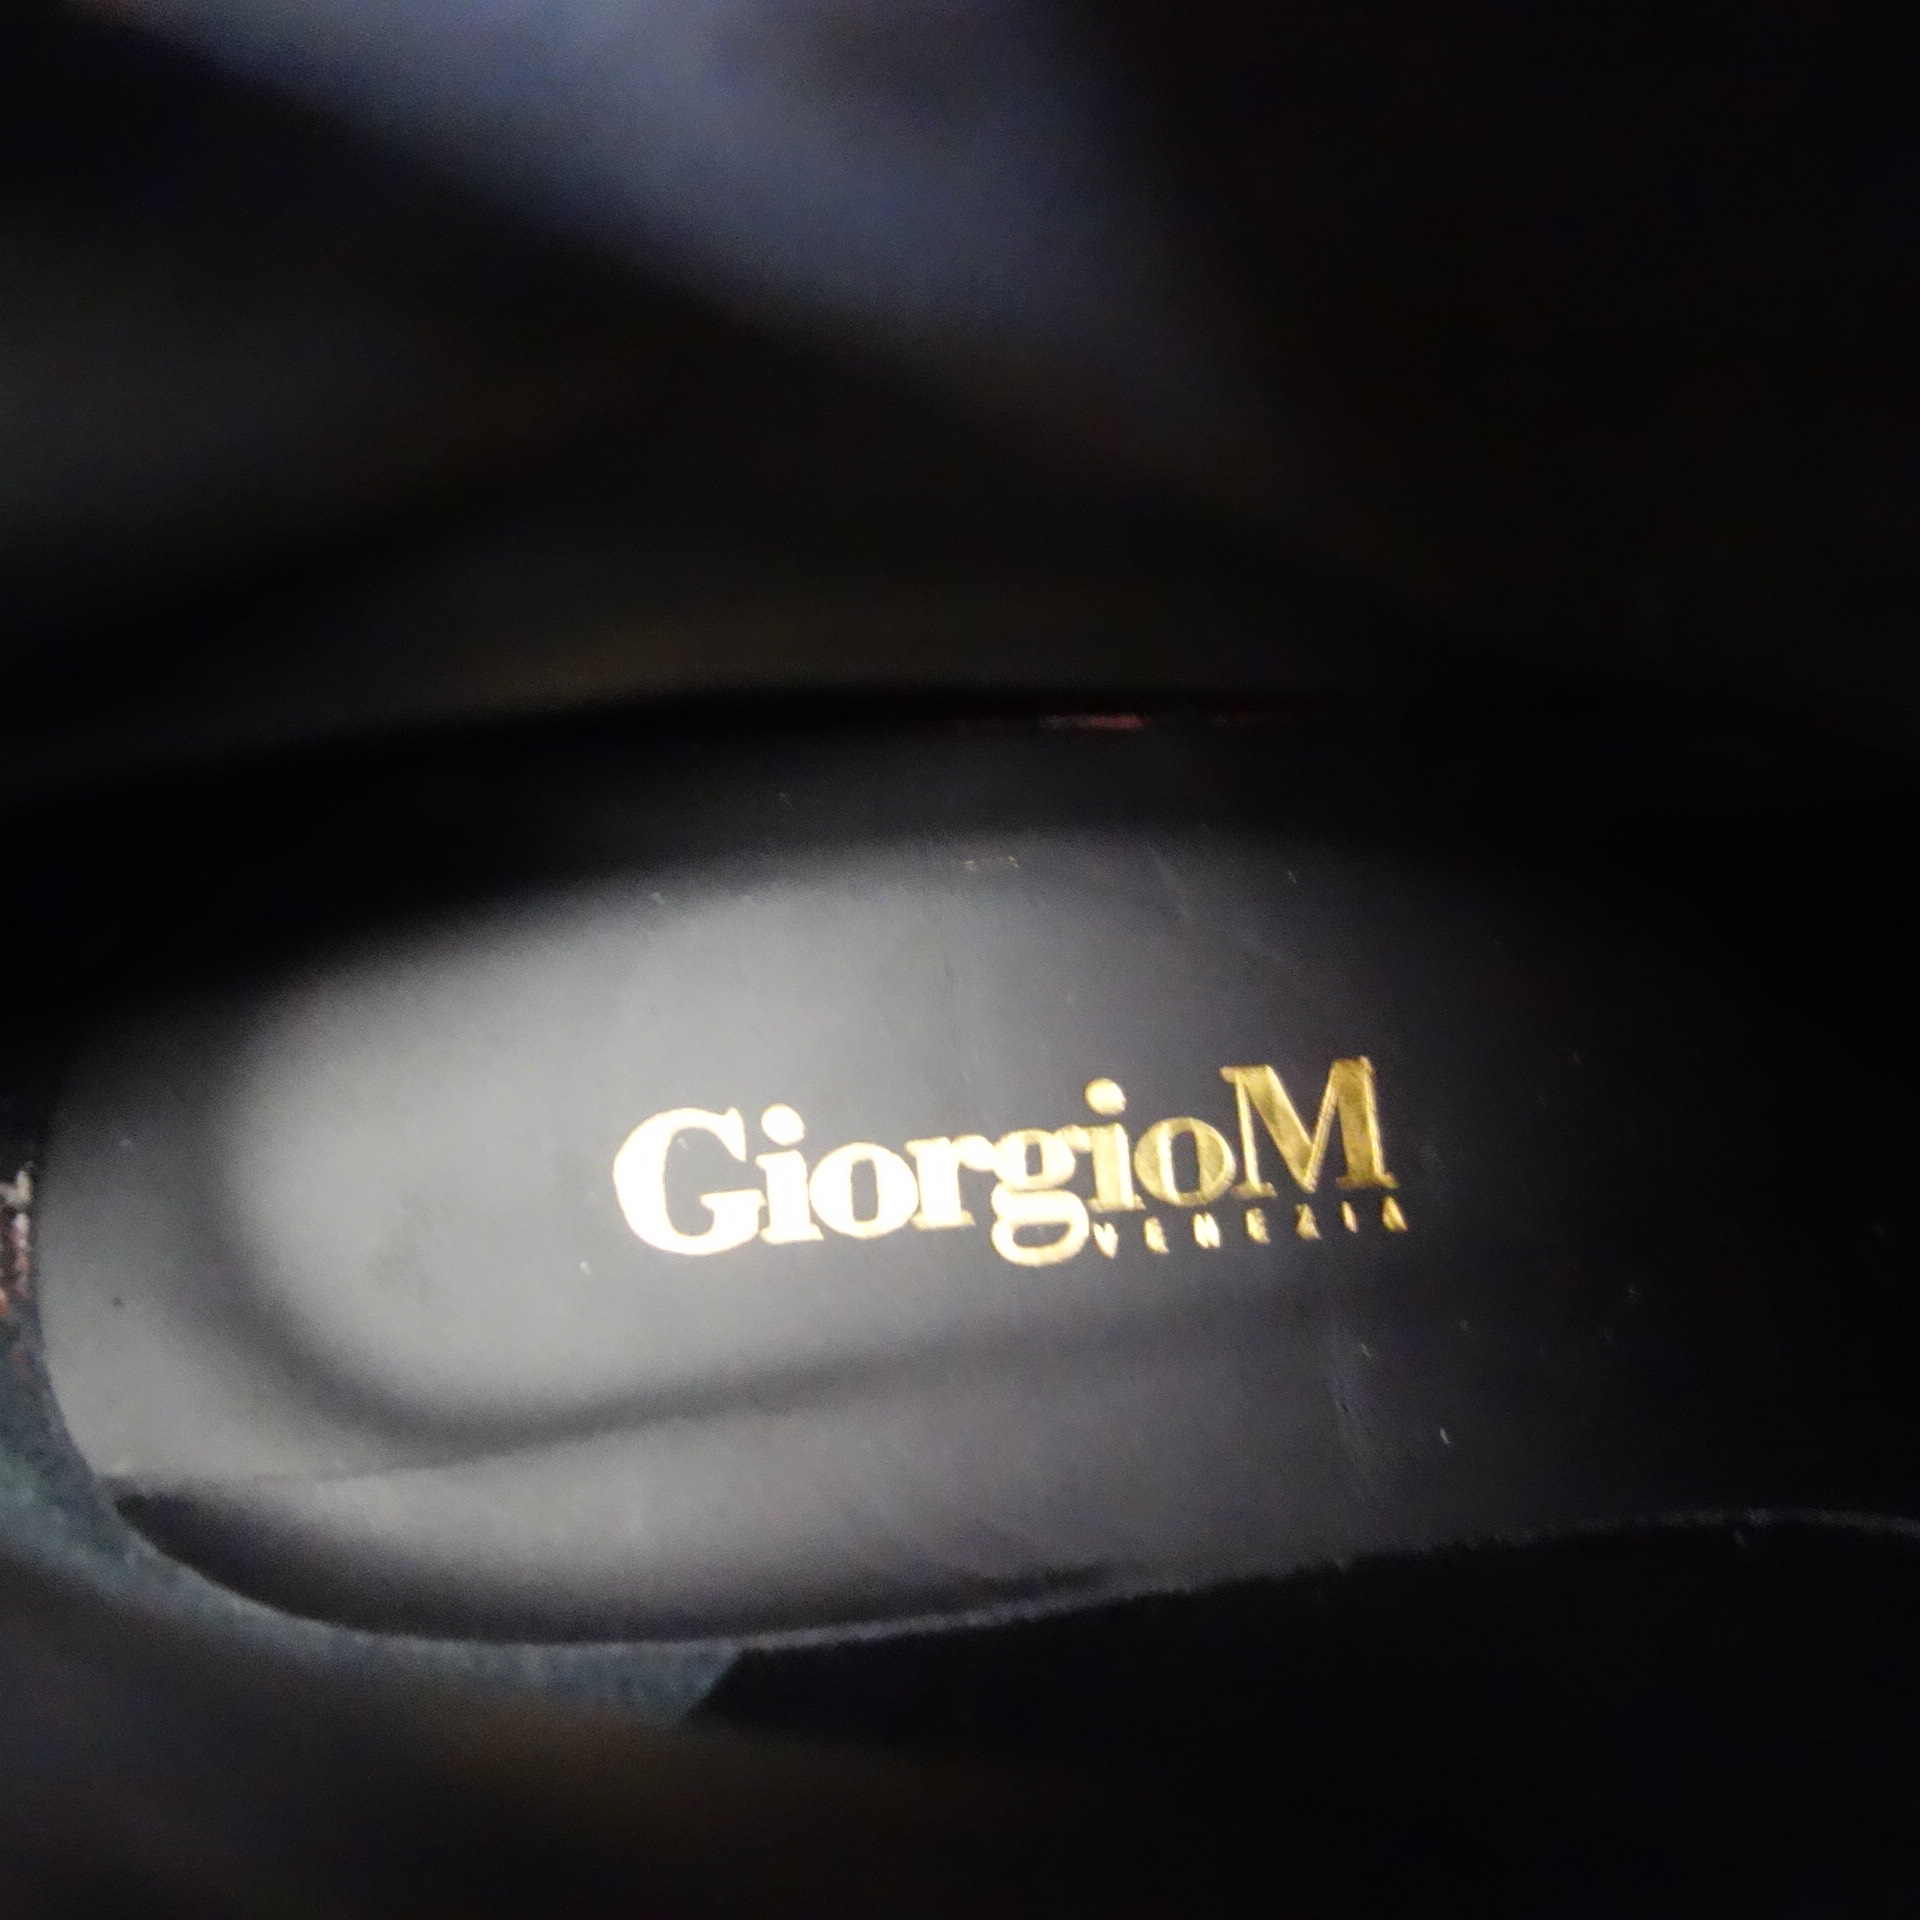 Damen Stiefeletten Schnürschuhe GIORGIO M Schuhe Boots Cognac Braun Leder Größe 41